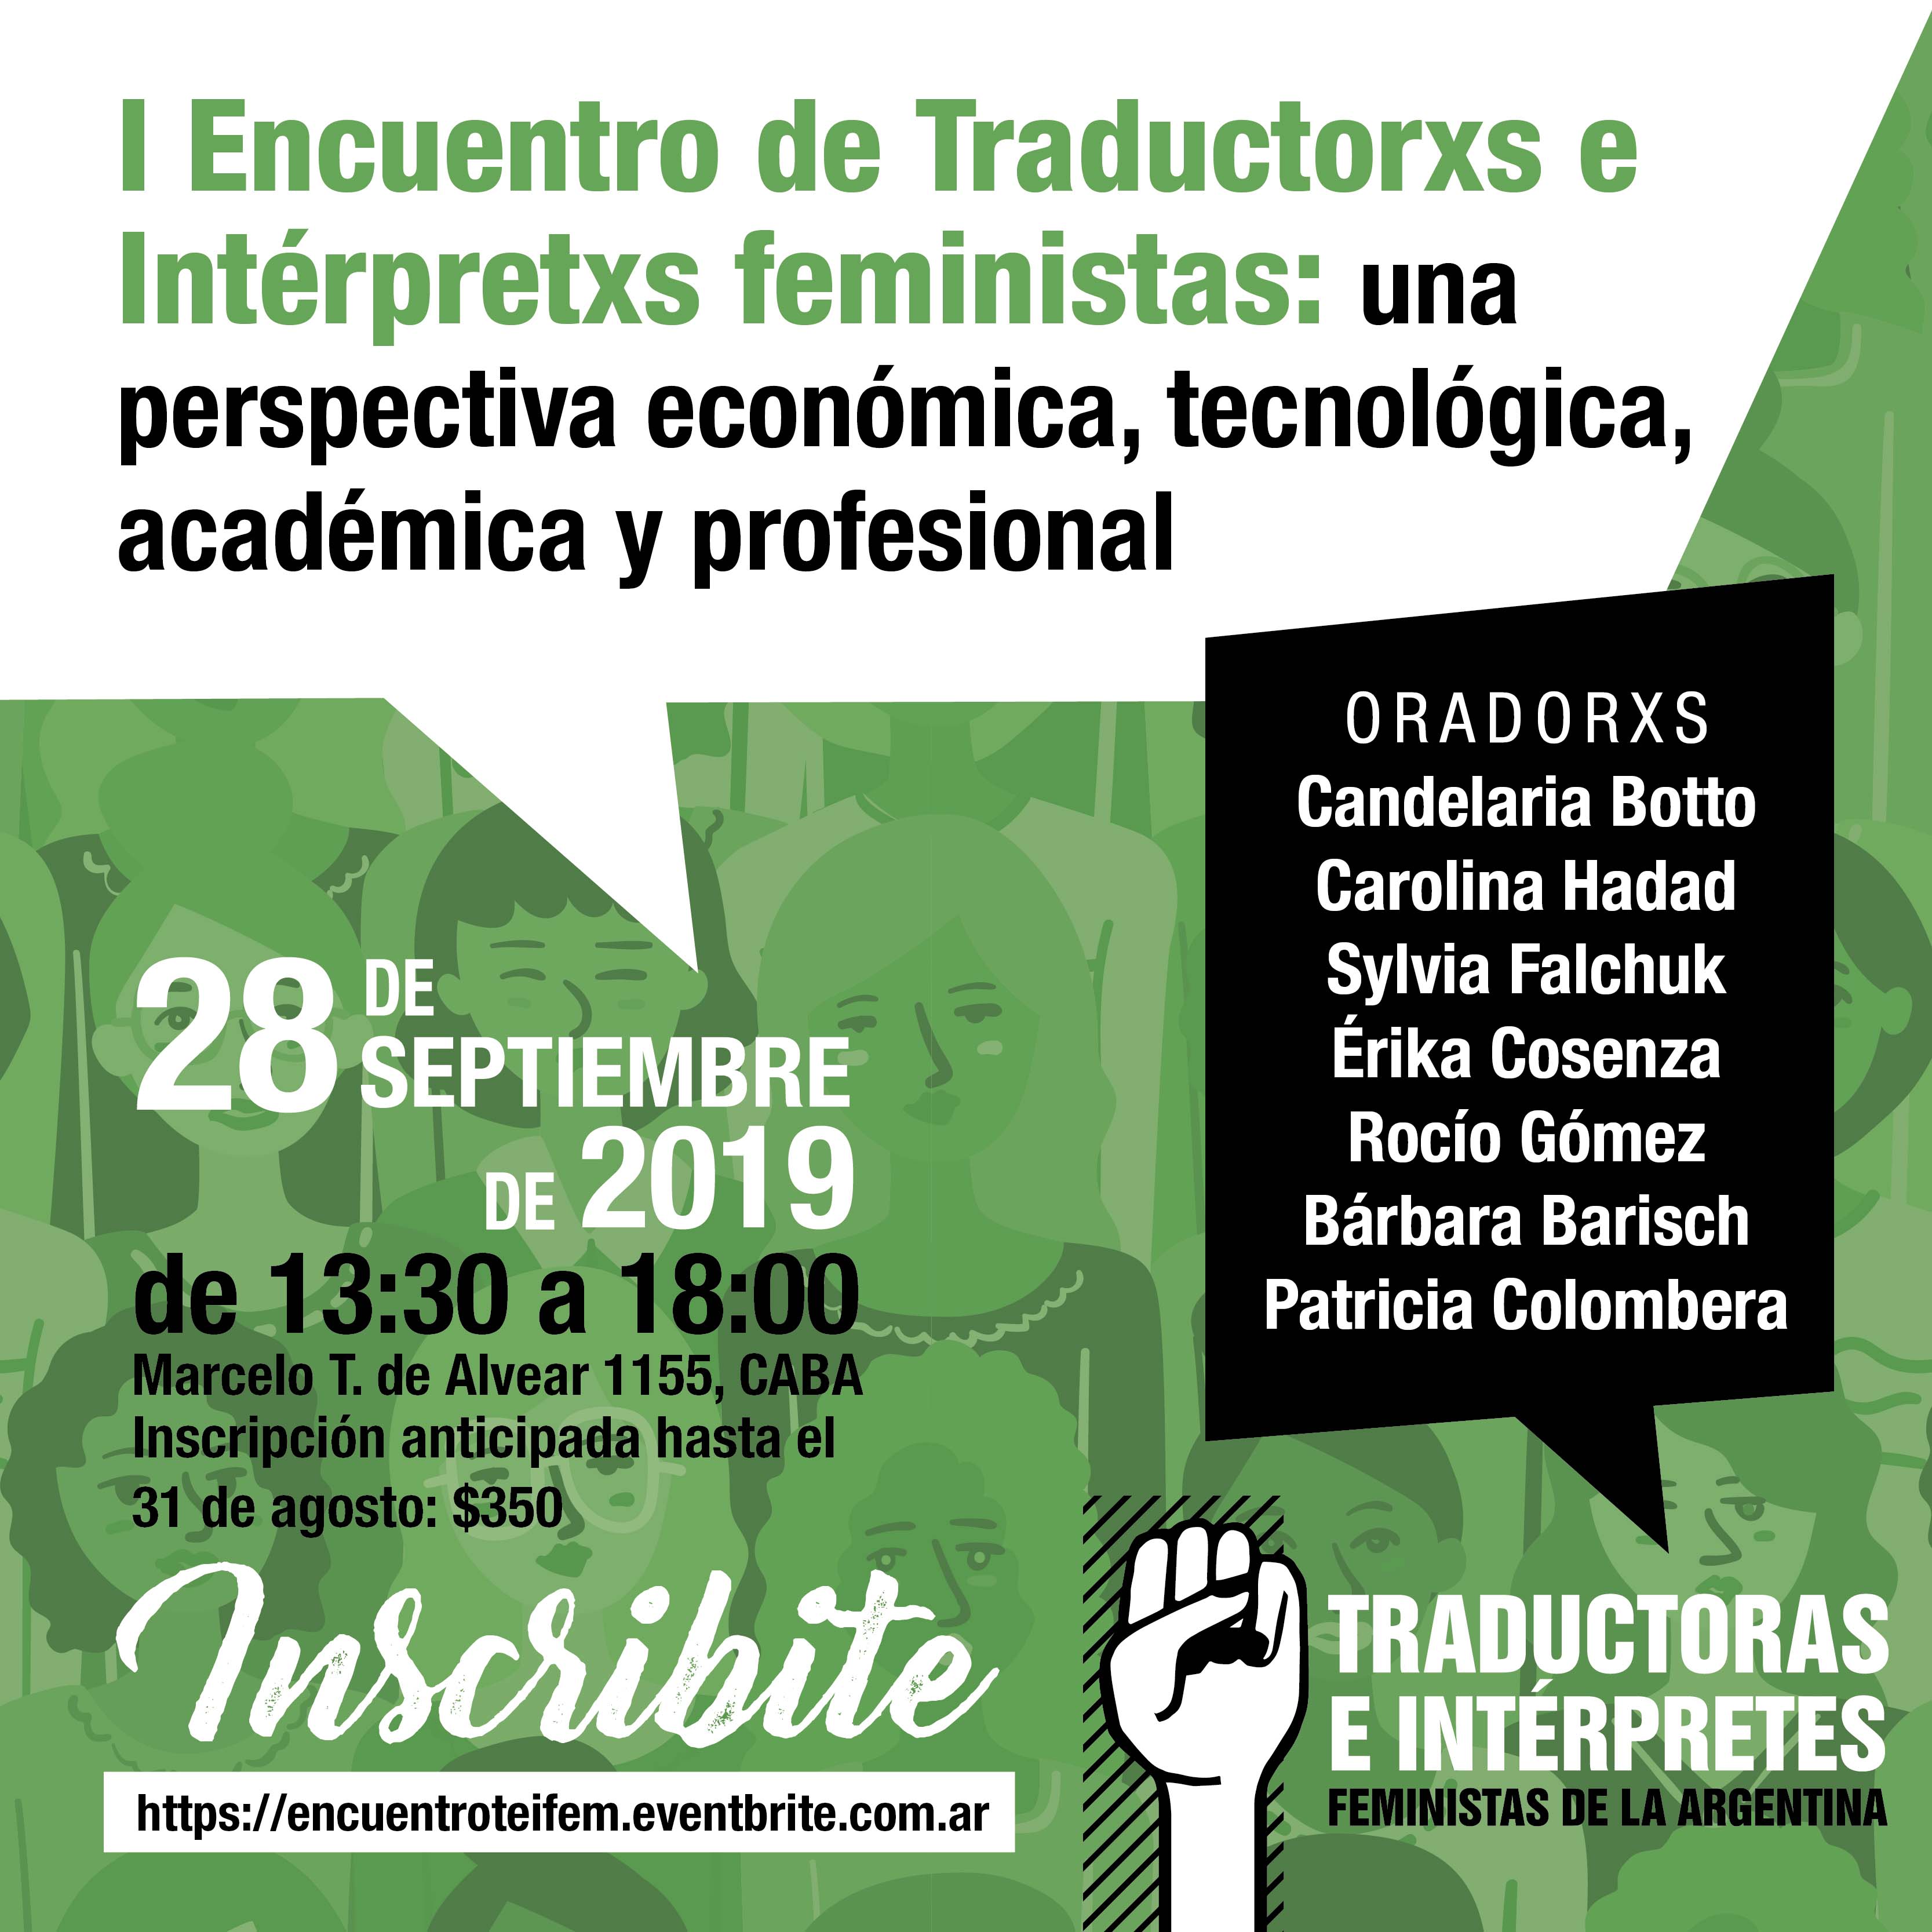 La imagen muestra el flyer de promoción del I Encuentro de Traductorxs e Intérpretxs Feministas: una perspectiva económica, tecnológica, académica y profesional, que se realizó el 28 de septiembre de 2019 y contó con Erika Cosenza entre las personas que expusieron.